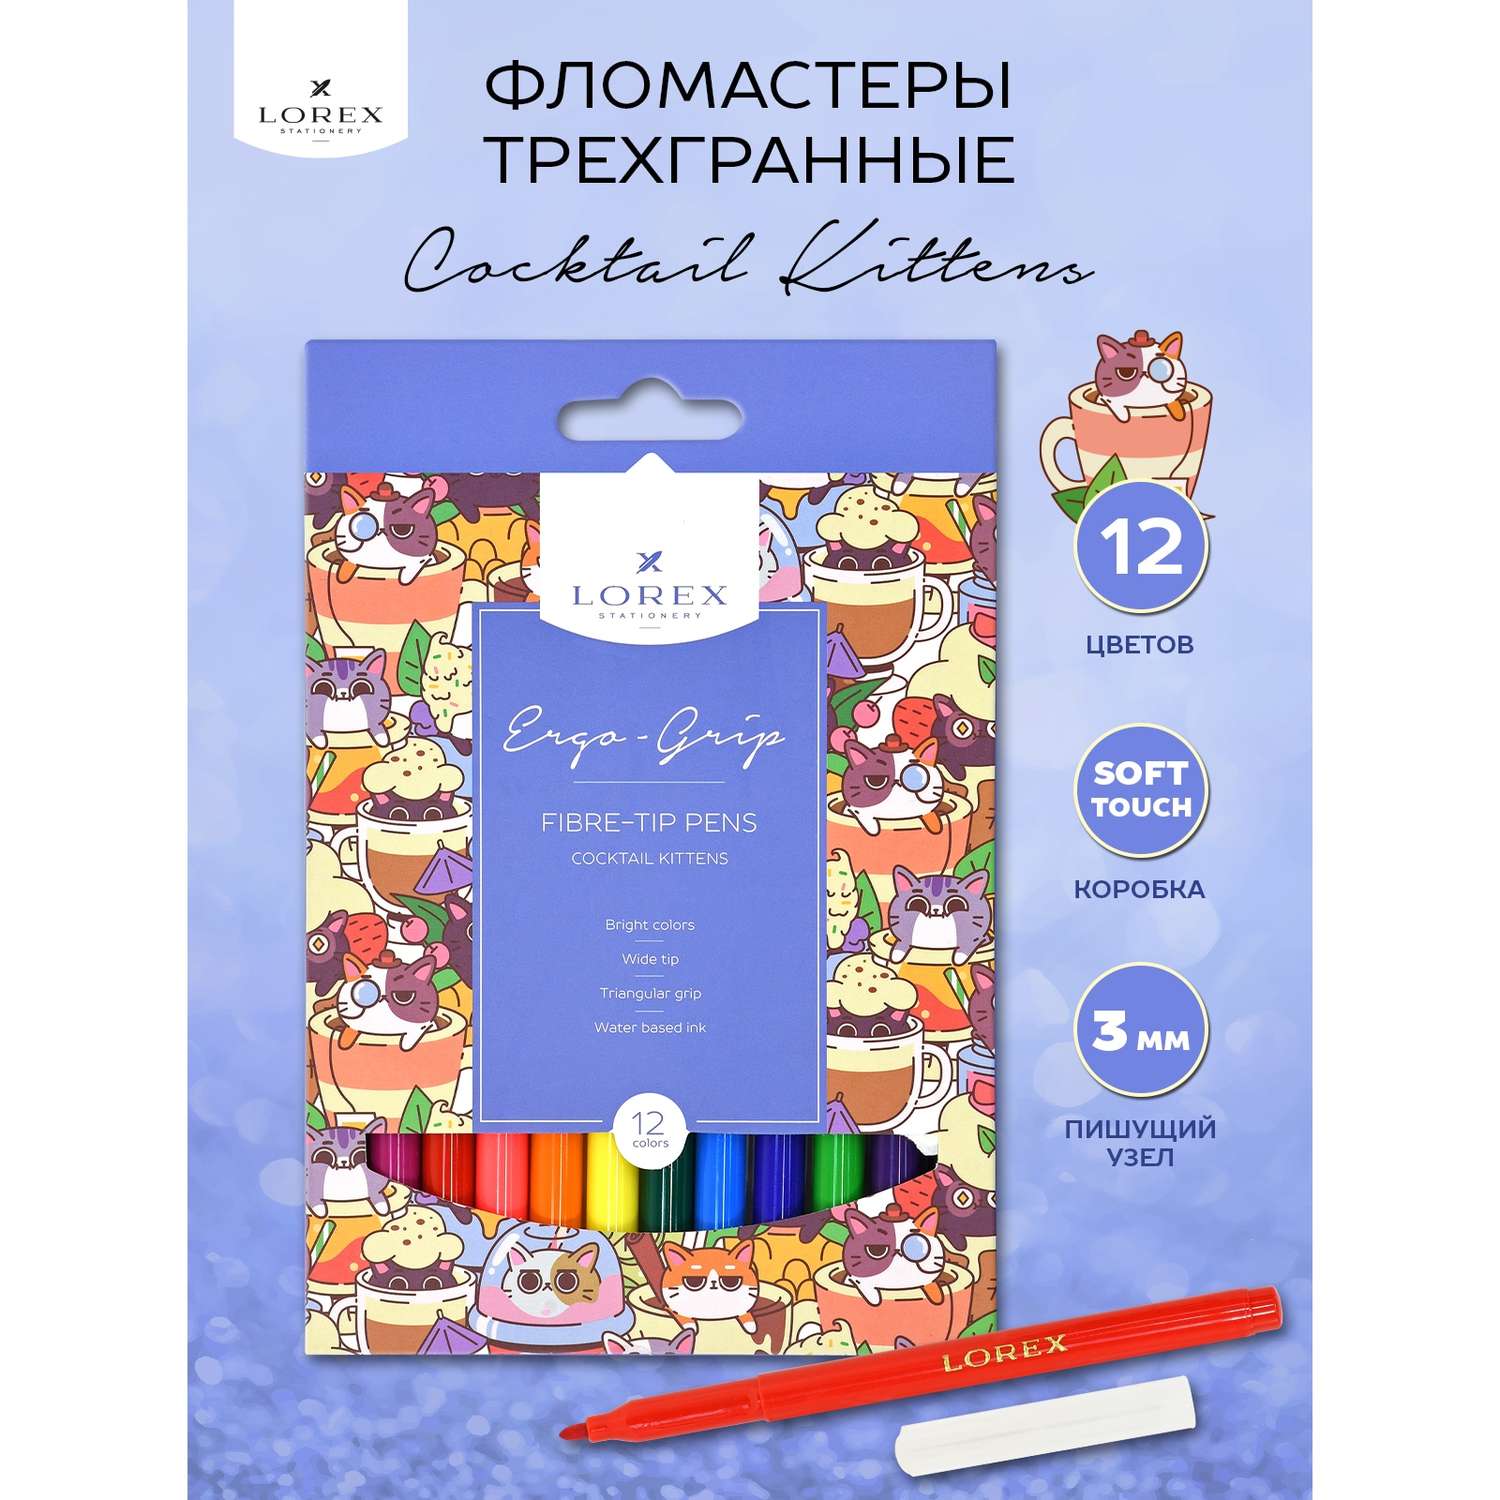 Фломастеры Lorex Stationery для рисования детские Cocktail kittens набор 12 цветов трехгранные - фото 2